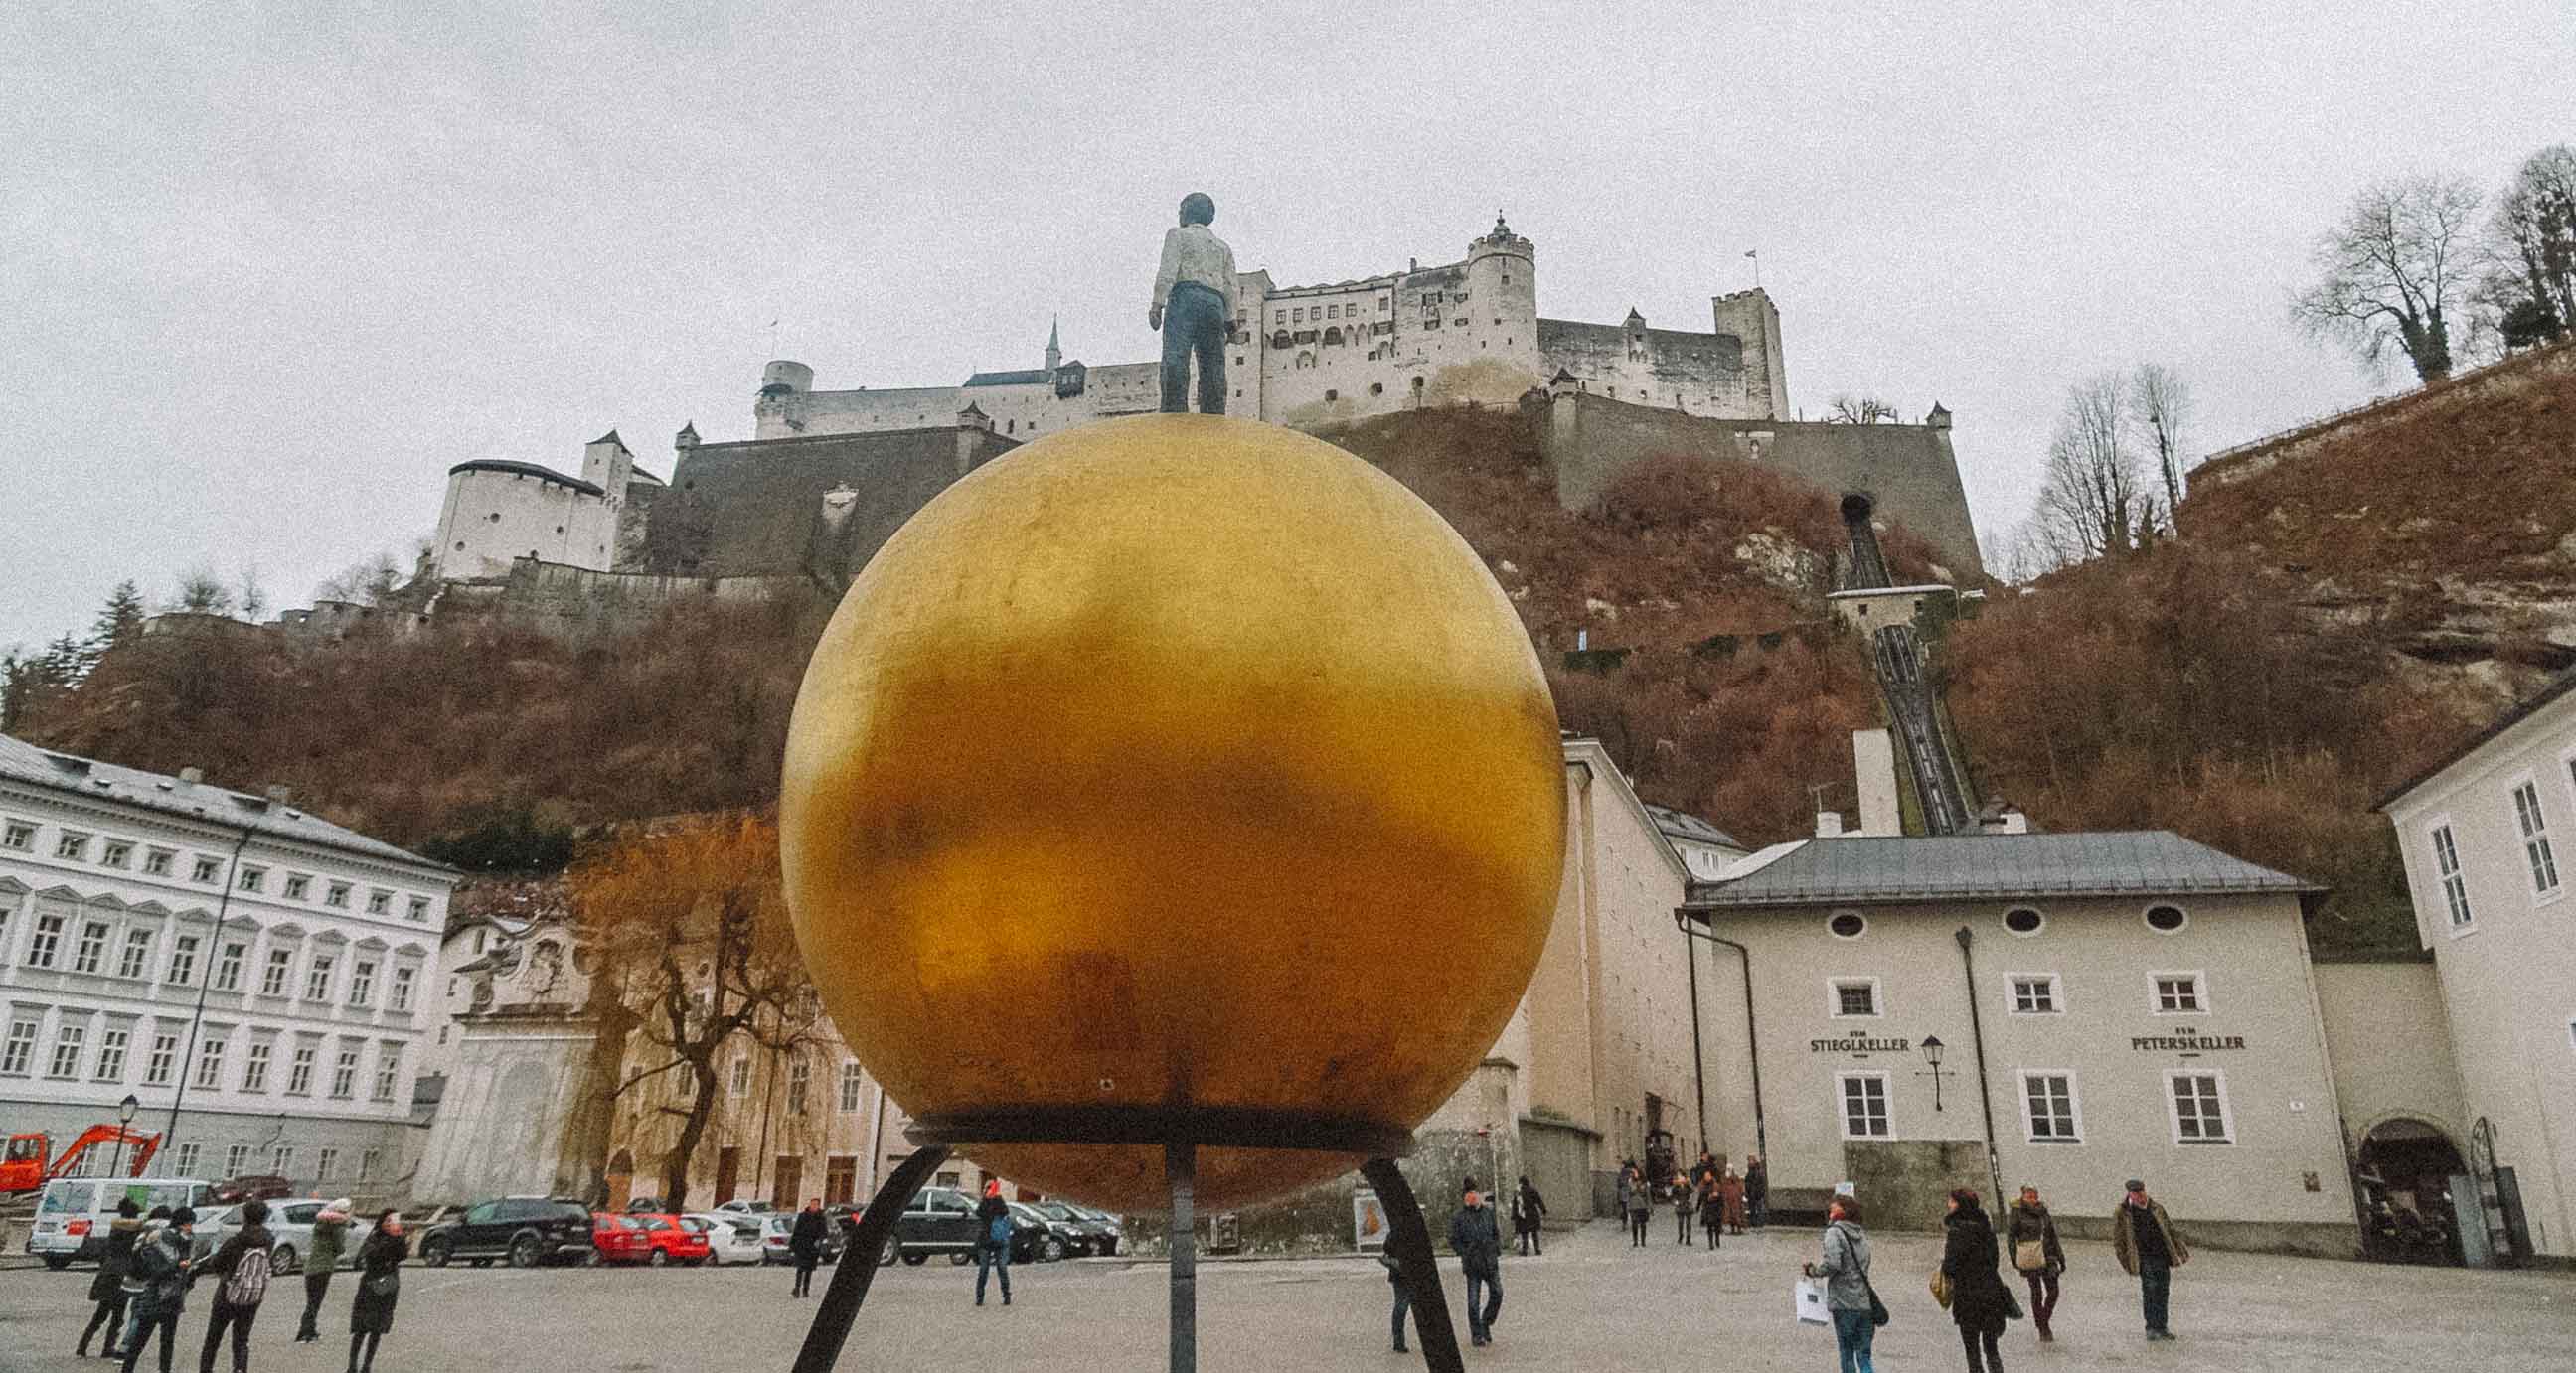 Estátua de uma esfera dourada com um homem em cima em uma praça de Salzburgo